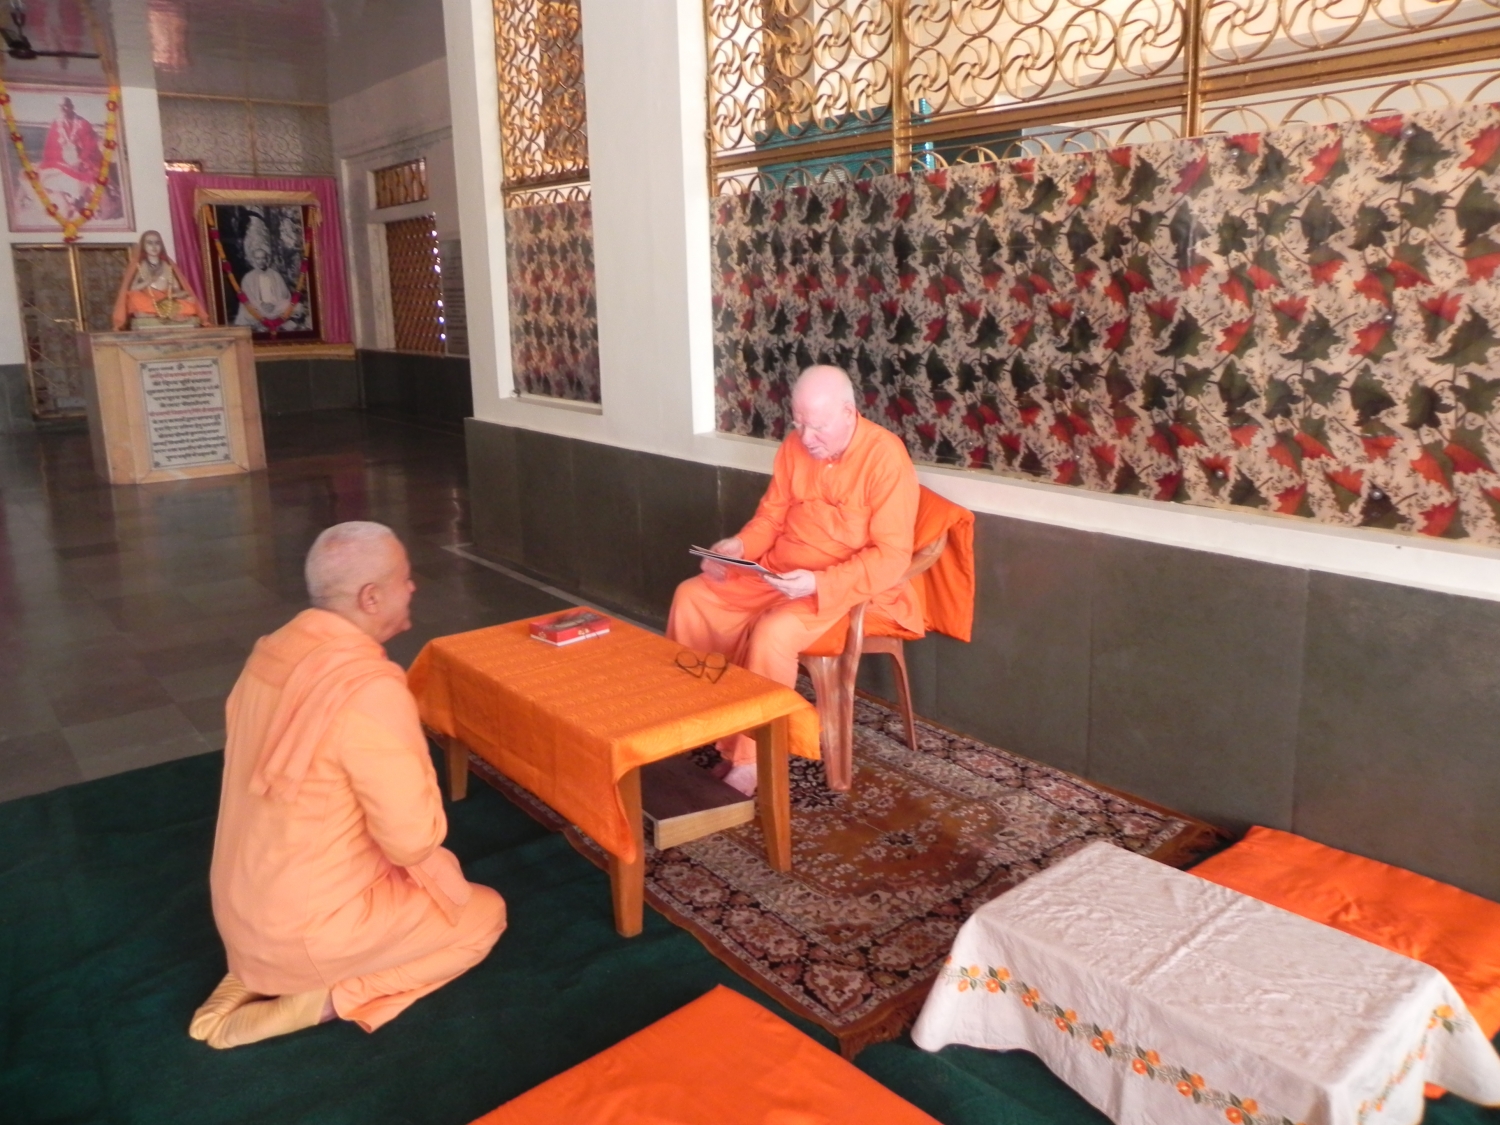 Meeting of H.H. Jagat Guru Amrta Súryánanda Mahá Rája with H.H. Svámin Vimlánanda Sarasvatí Mahá Rája - Shivánanda Áshrama, rshikesh, India - 2011, October